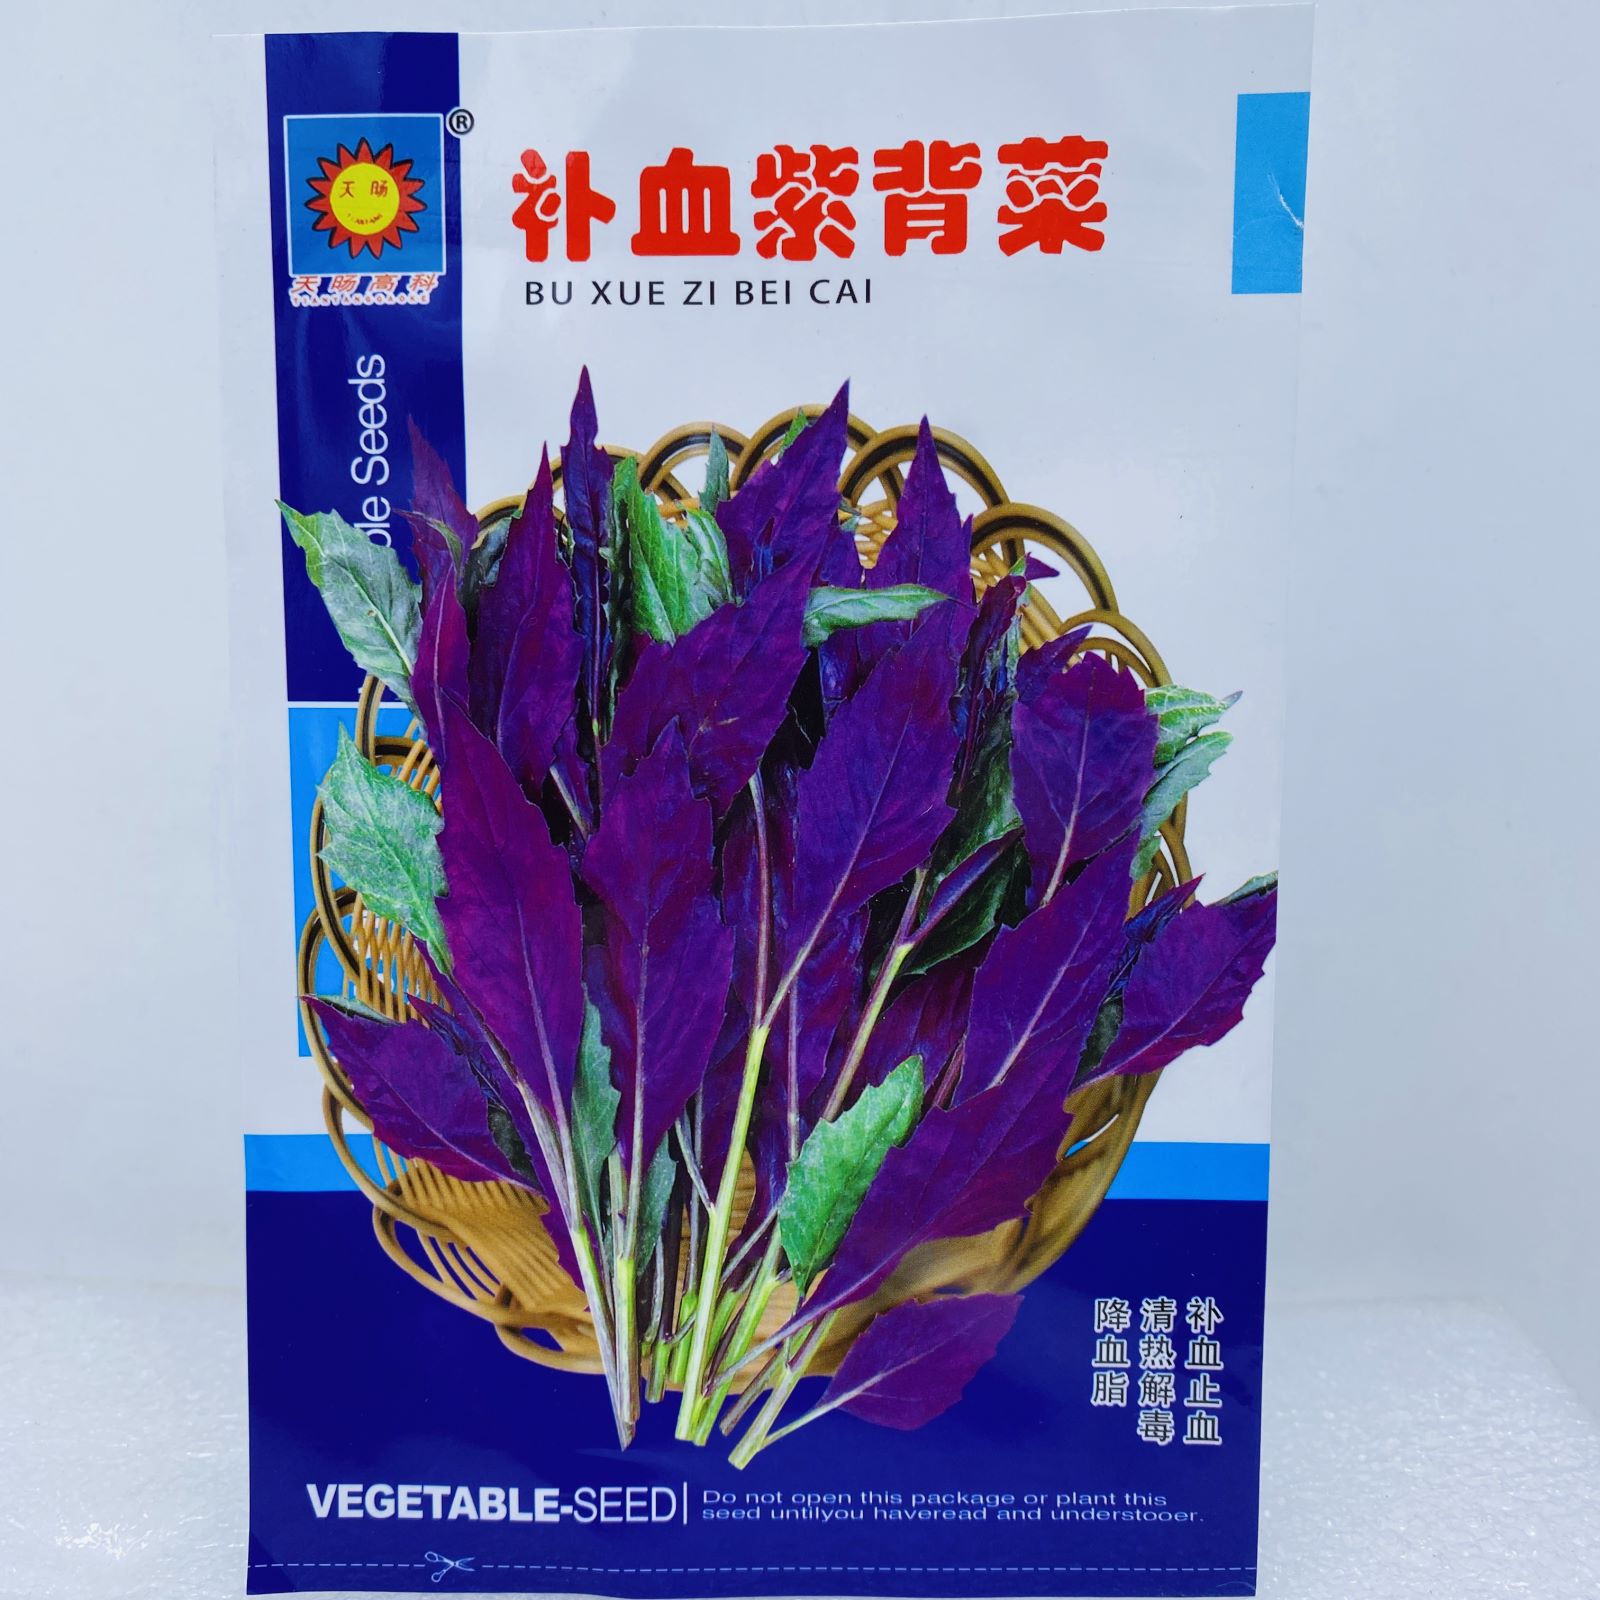 紫背天葵的功效与作用